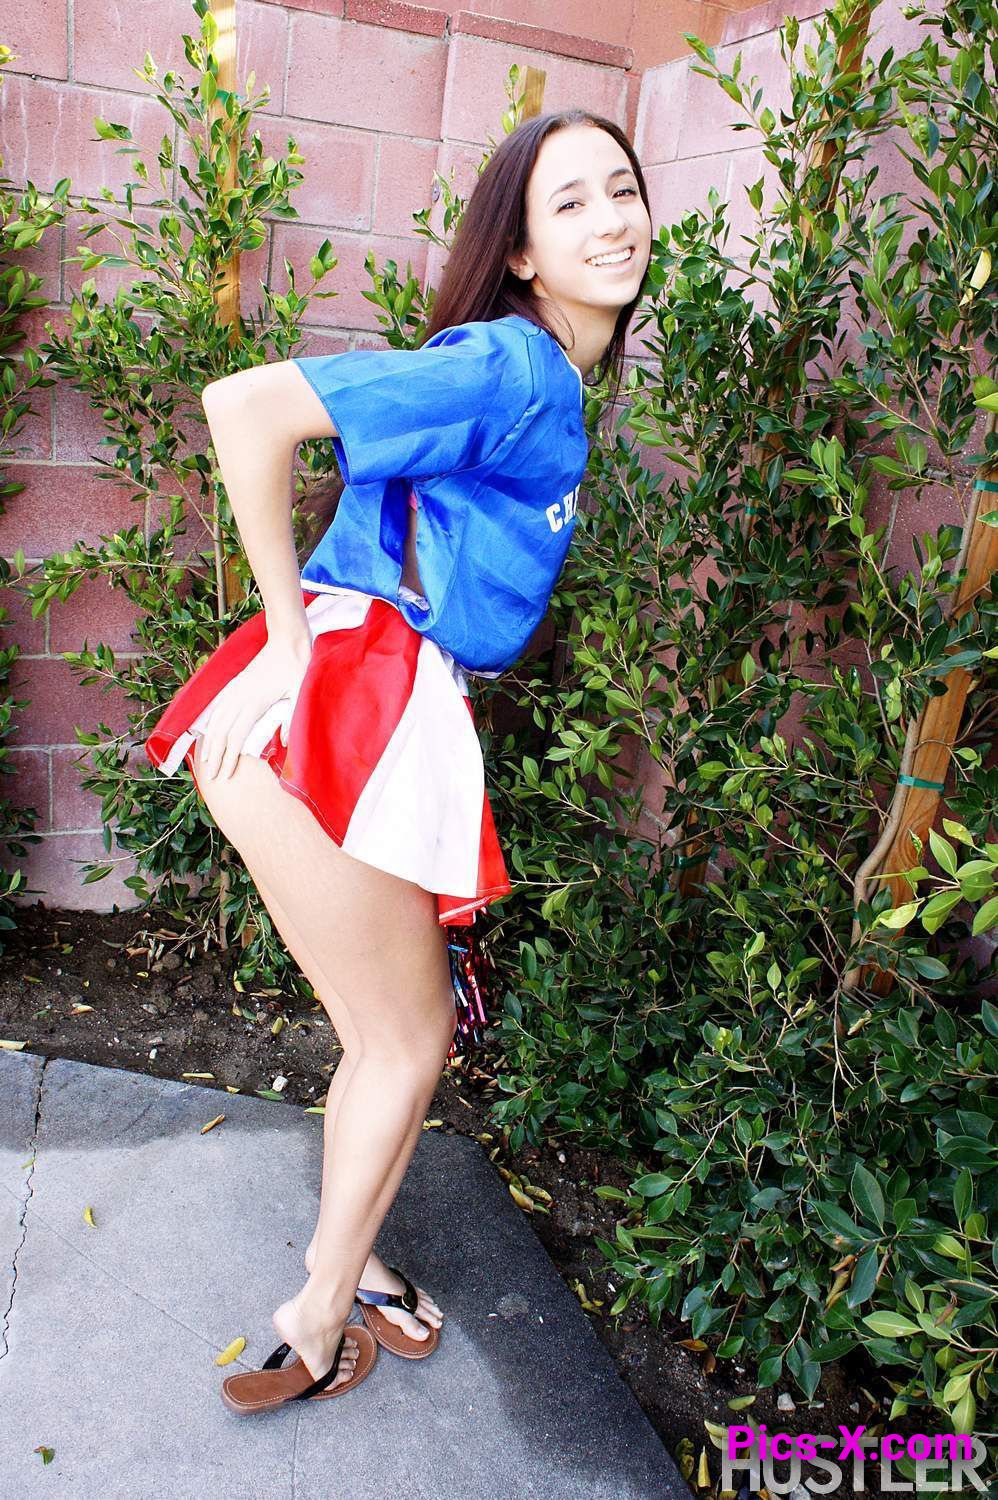 Belle Knox in Naughty Cheerleaders 4 pt. 2 - Image 23